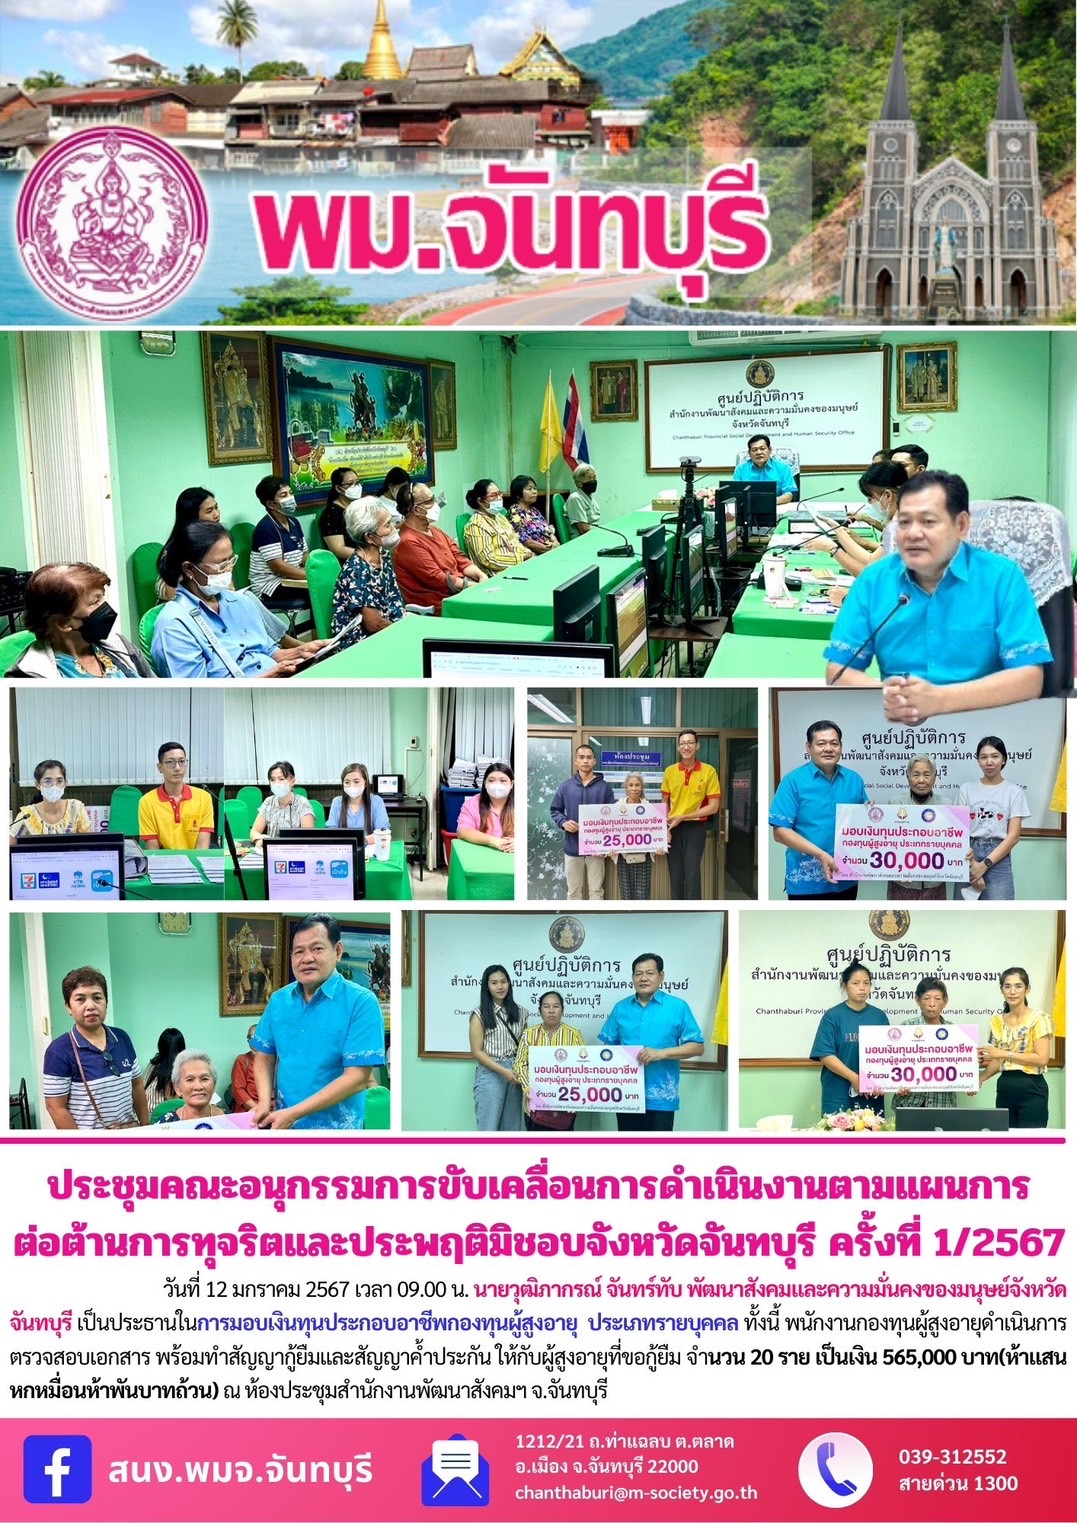 พม.จันทบุรี จัดประชุมคณะทำงานพิจารณากลั่นกรองโครงการที่ขอรับการสนับสนุนและการกู้ยืมเงินทุนประกอบอาชีพผู้สูงอายุ ประจำจังหวัดจันทบุรี ครั้งที่ 1/2567